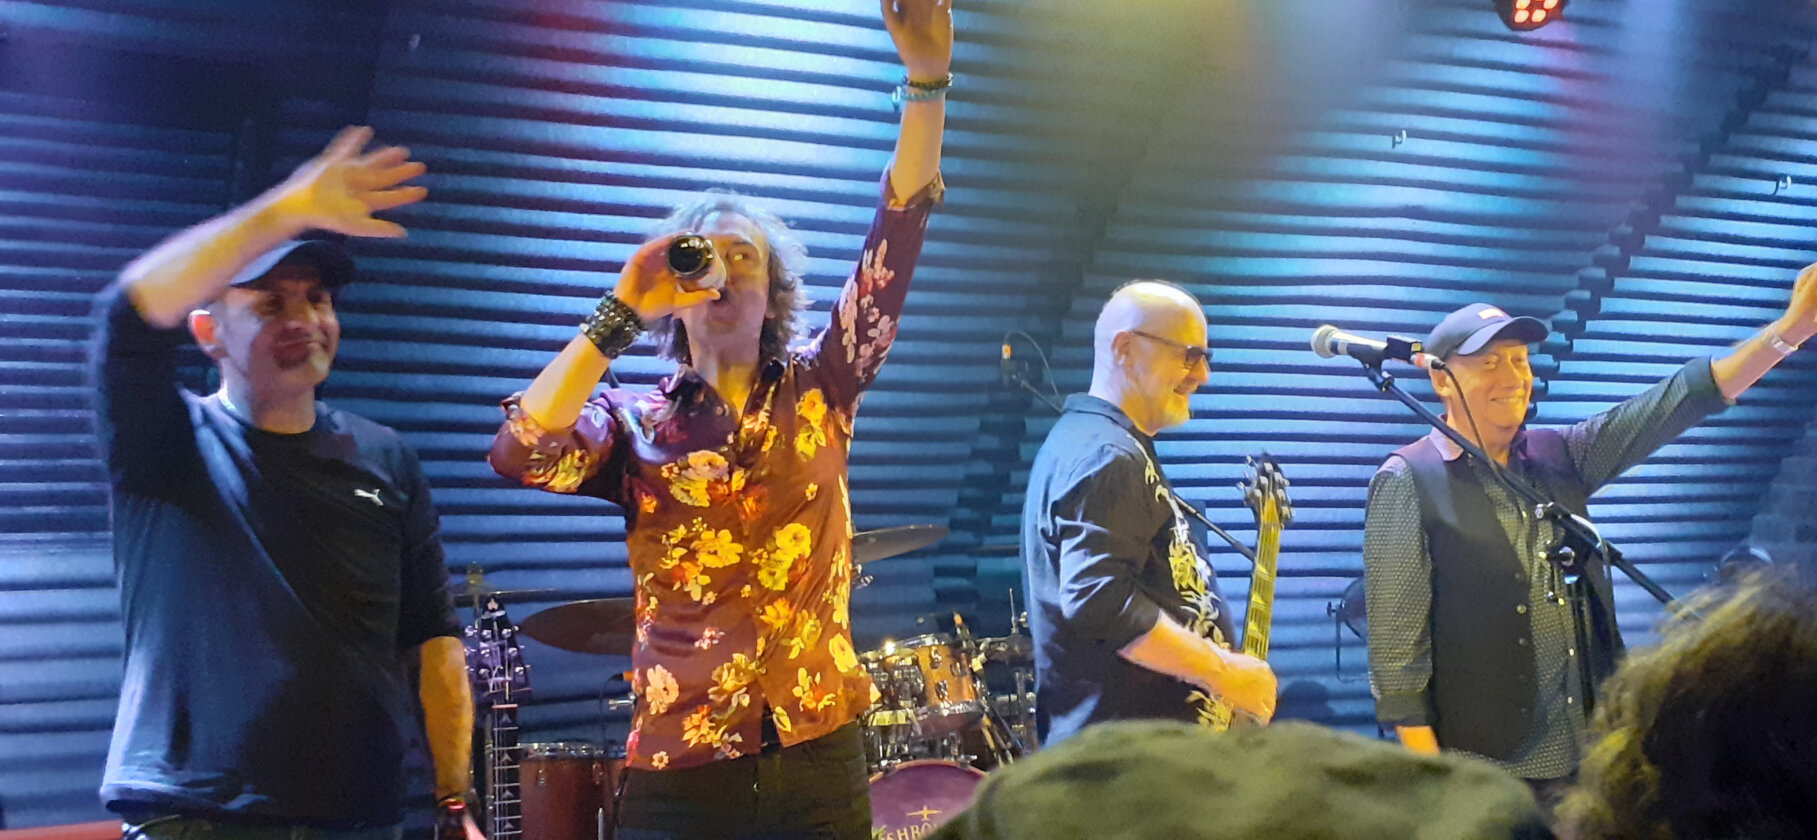 Wishbone Ash – Prog-Rock-Epen, AOR-Ohrwürmer und ein Blues-Ausflug: Andy Powell und seine Bandkollegen überzeugen in Freiburg mit einer abwechslungsreichen, nostalgietrunkenen Setlist und viel Spielfreude. – Raus mit hochverdientem Applaus.